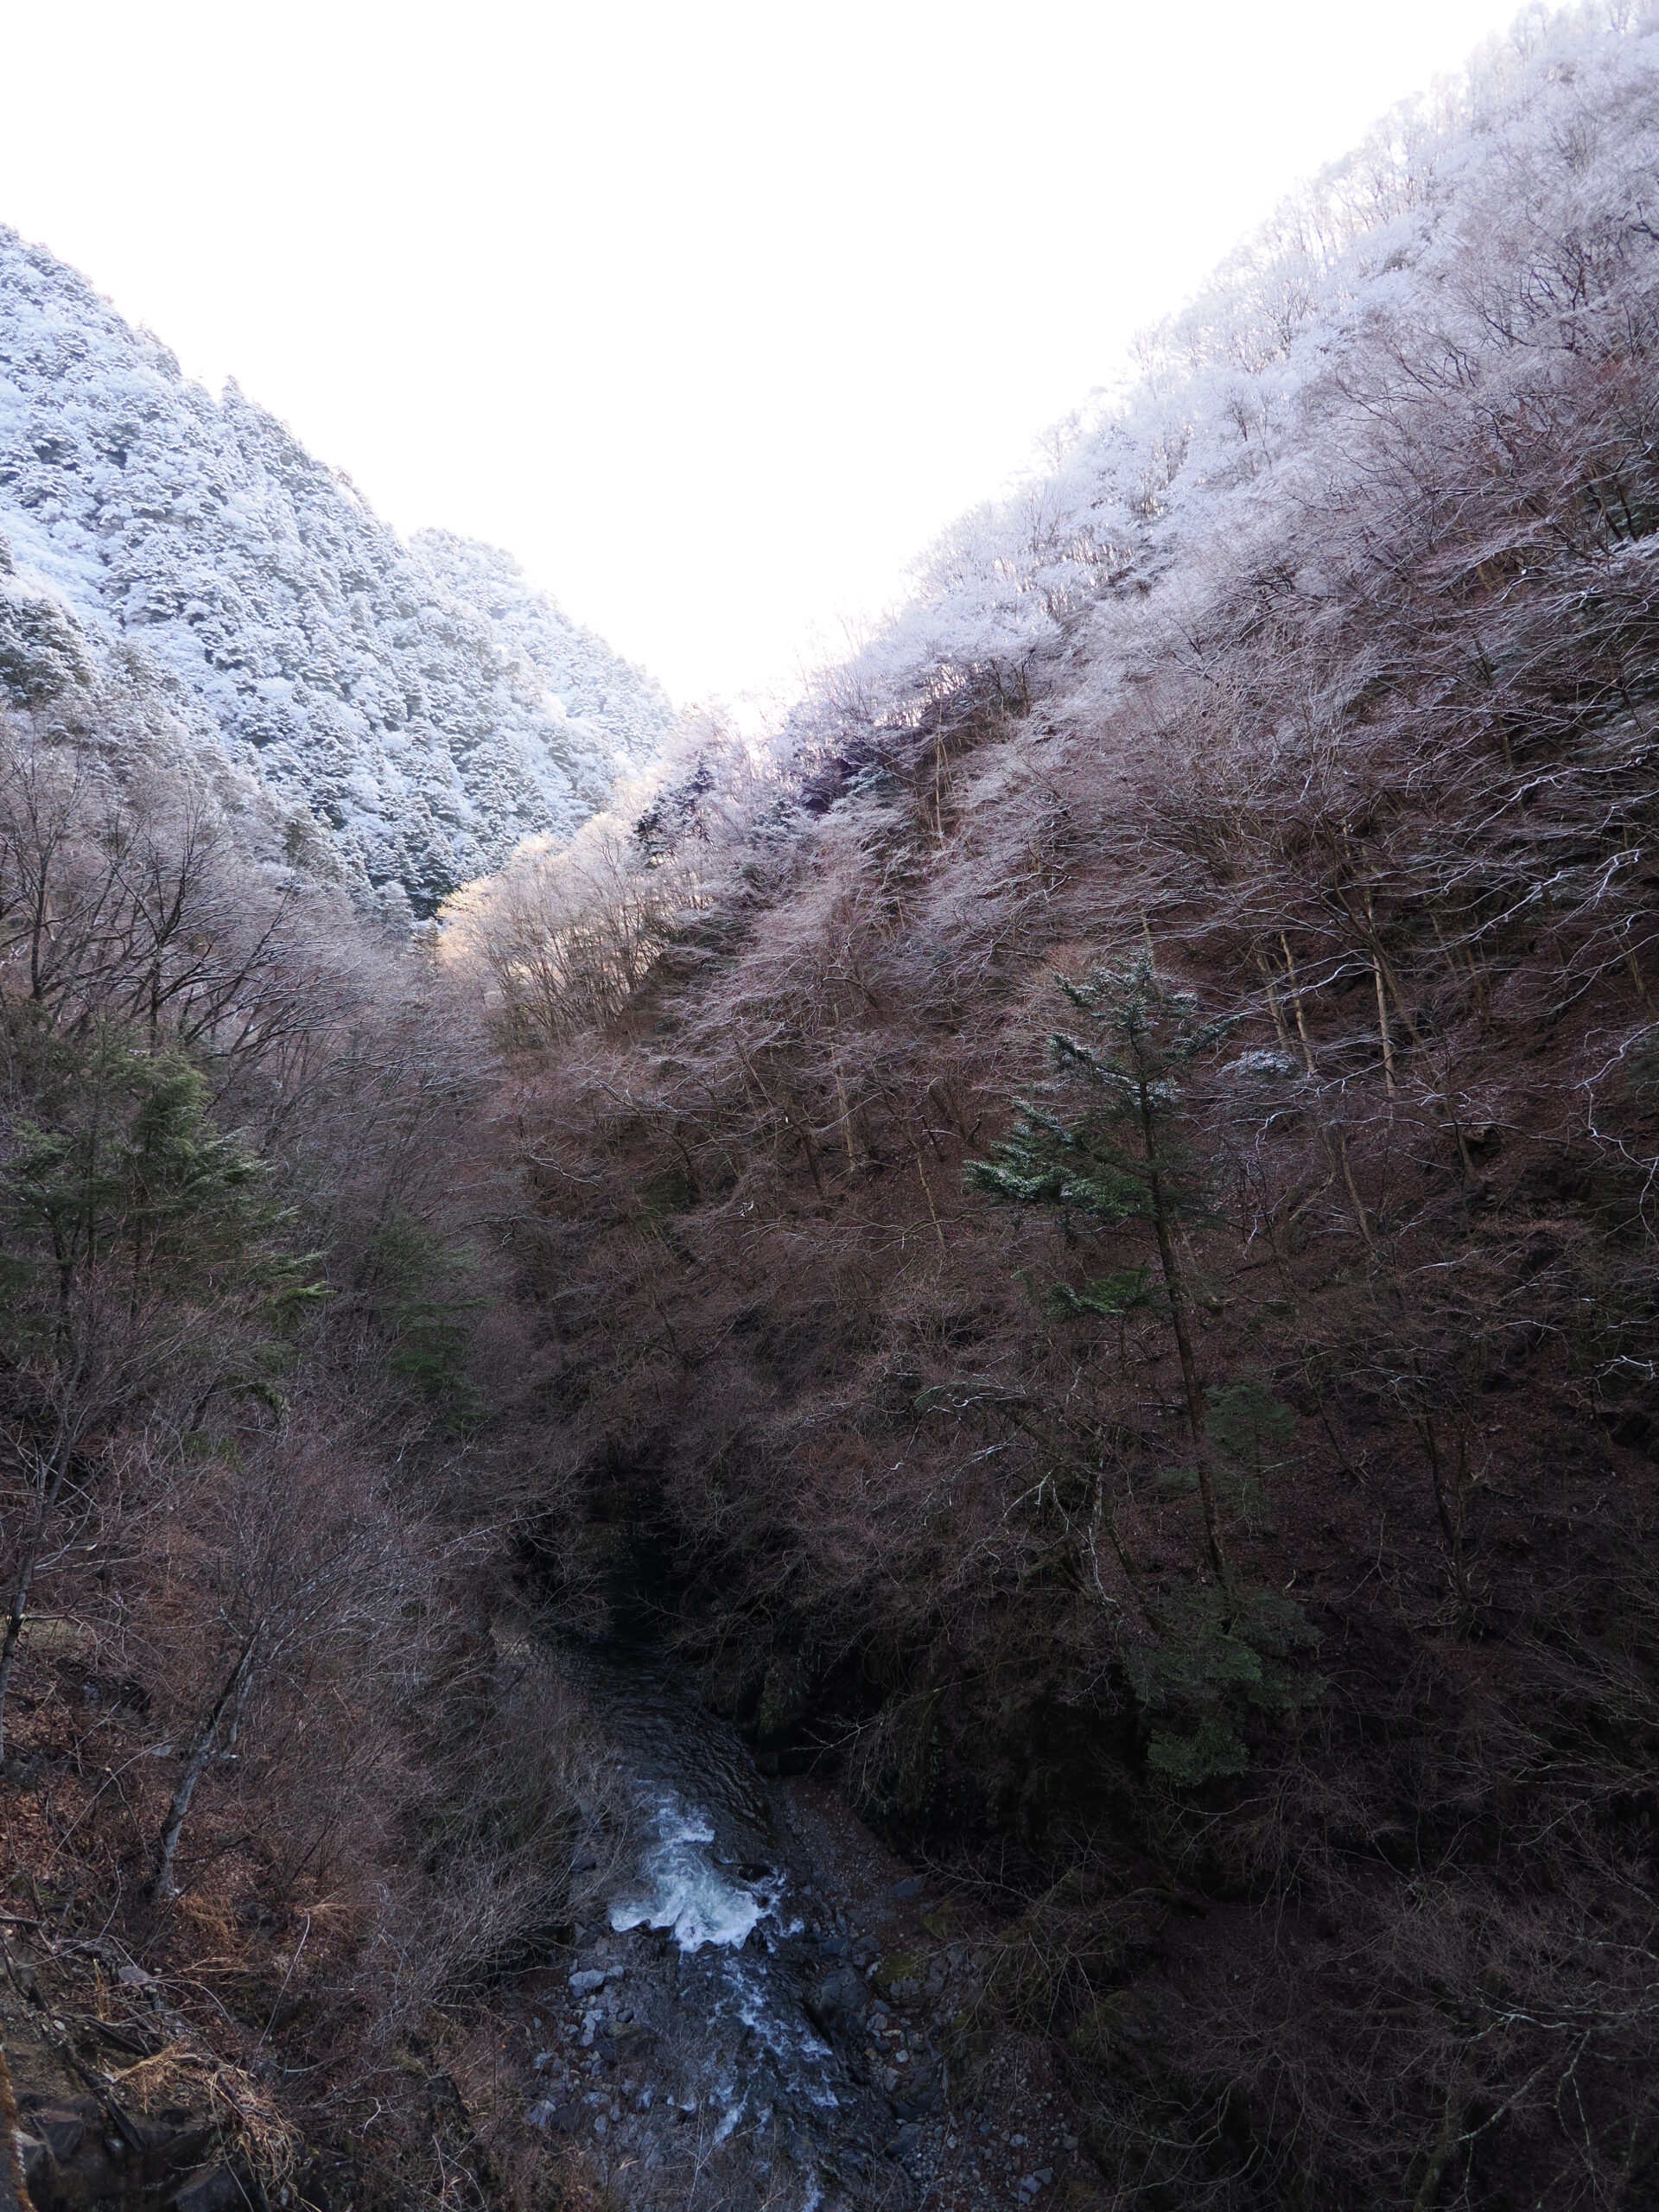 クルマを降りて撮影した風景写真。山肌は樹氷で覆われ、渓谷には川が流れている。